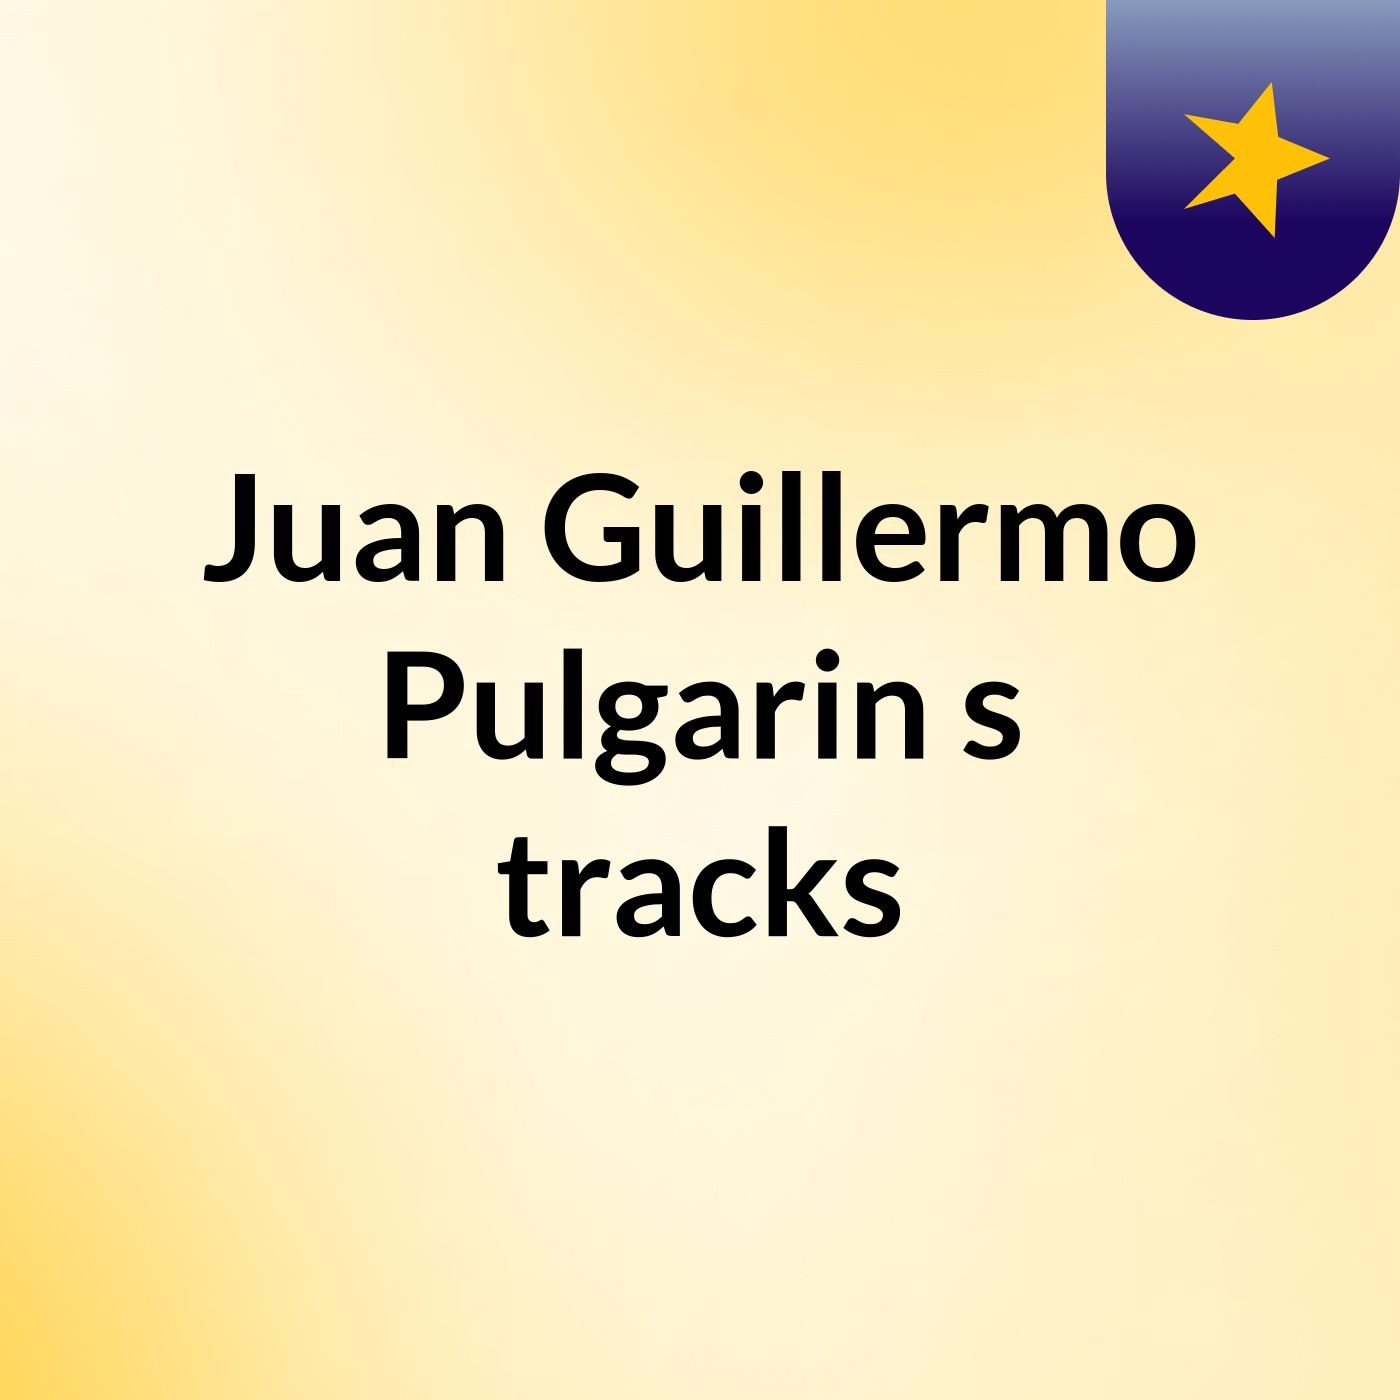 Juan Guillermo Pulgarin's tracks